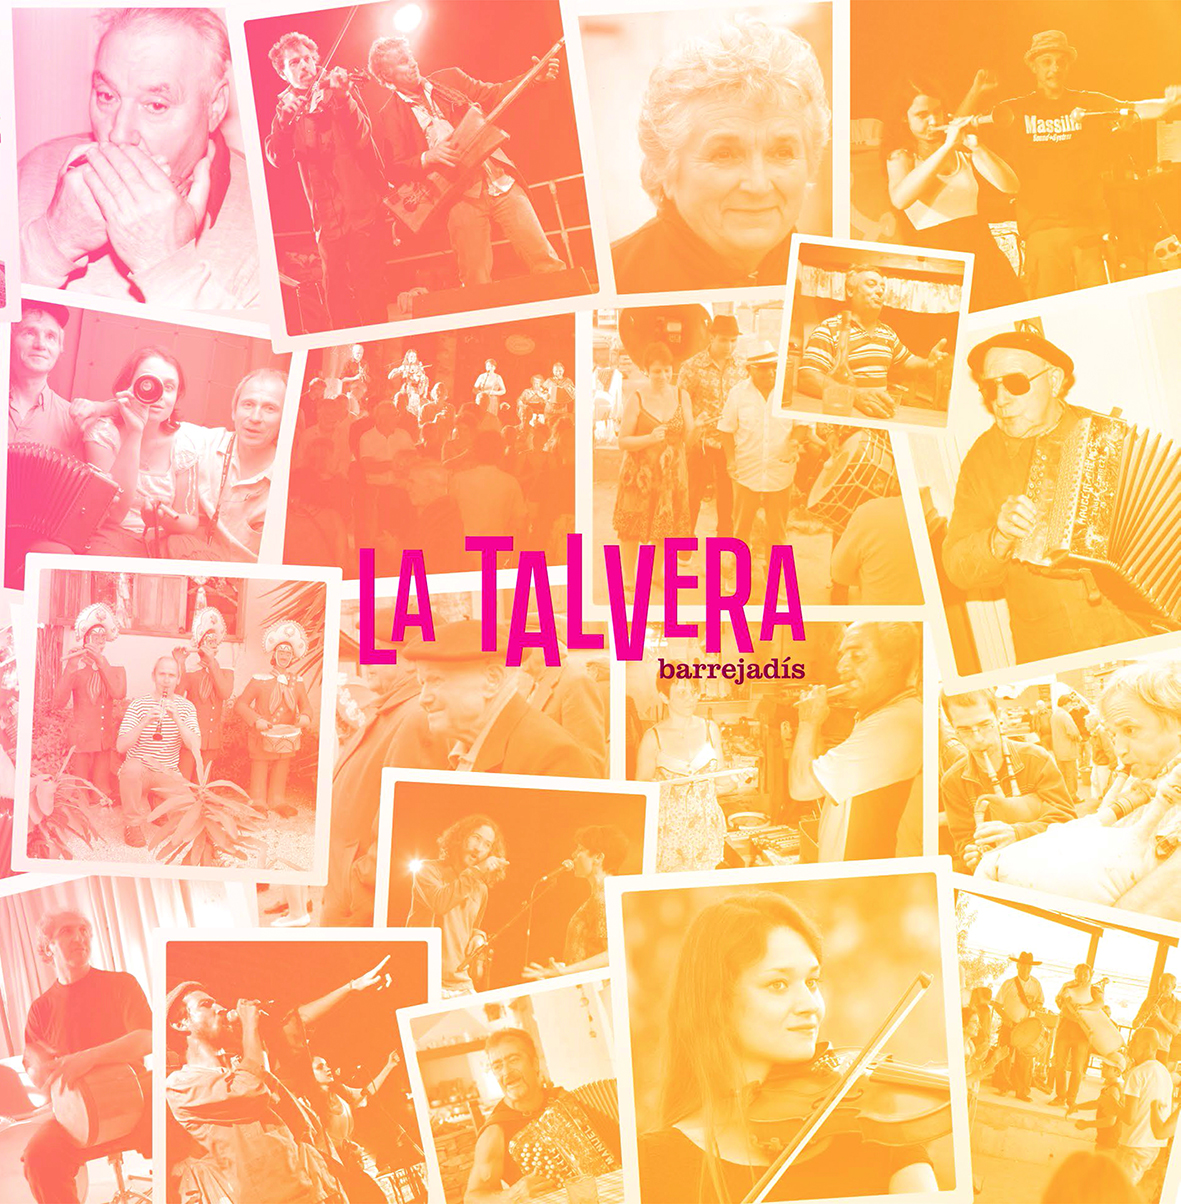 40 ans d’istòria occitana e musicala amb La Talvera